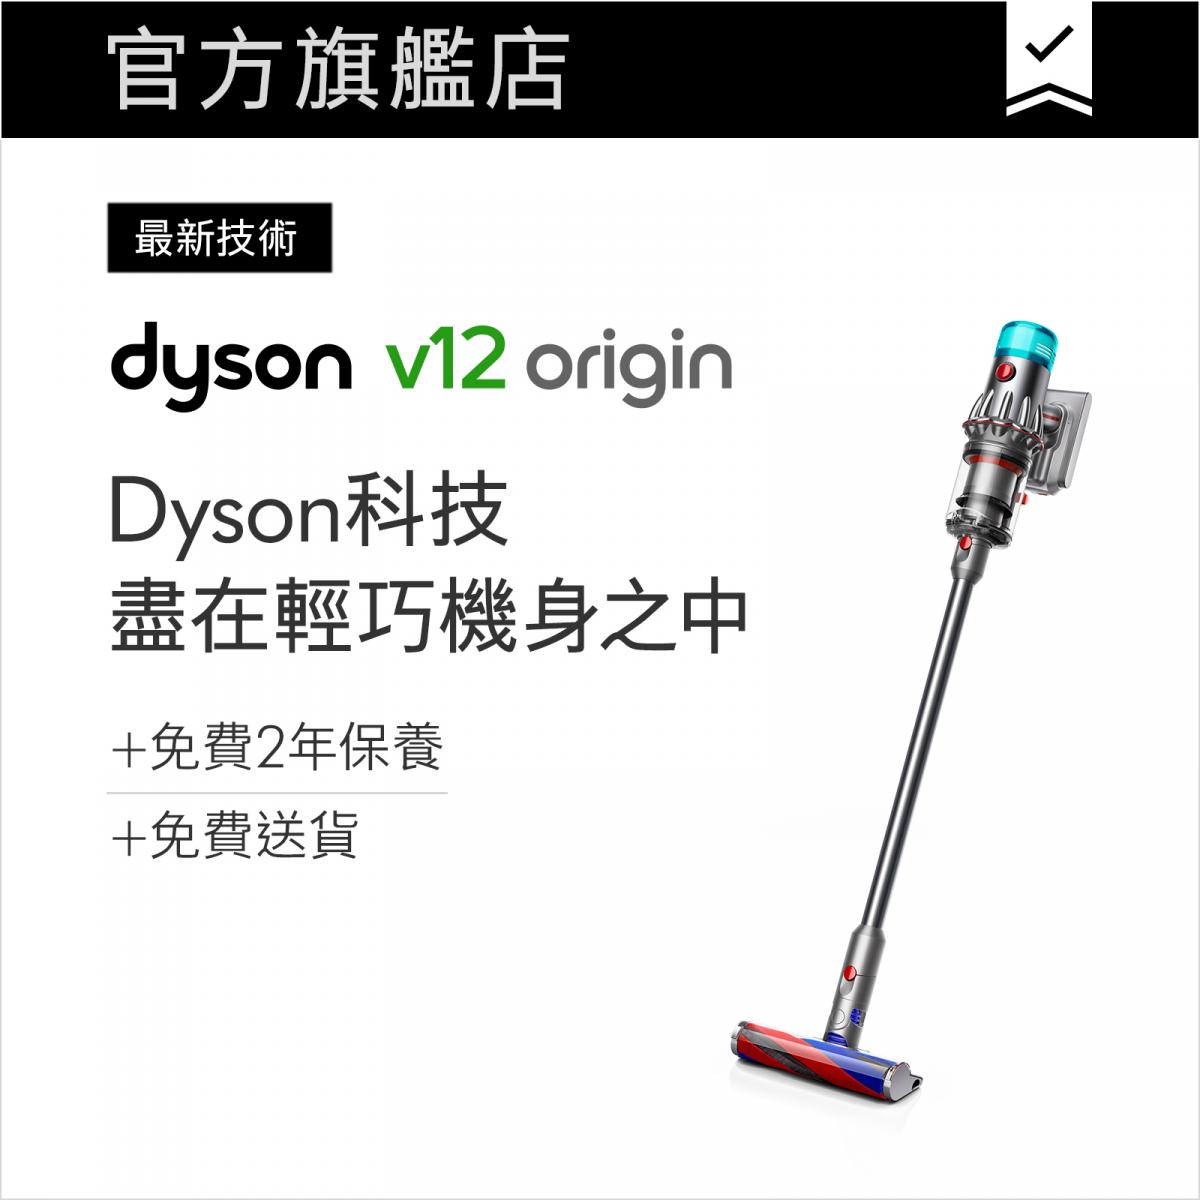 V12 Origin vacuum